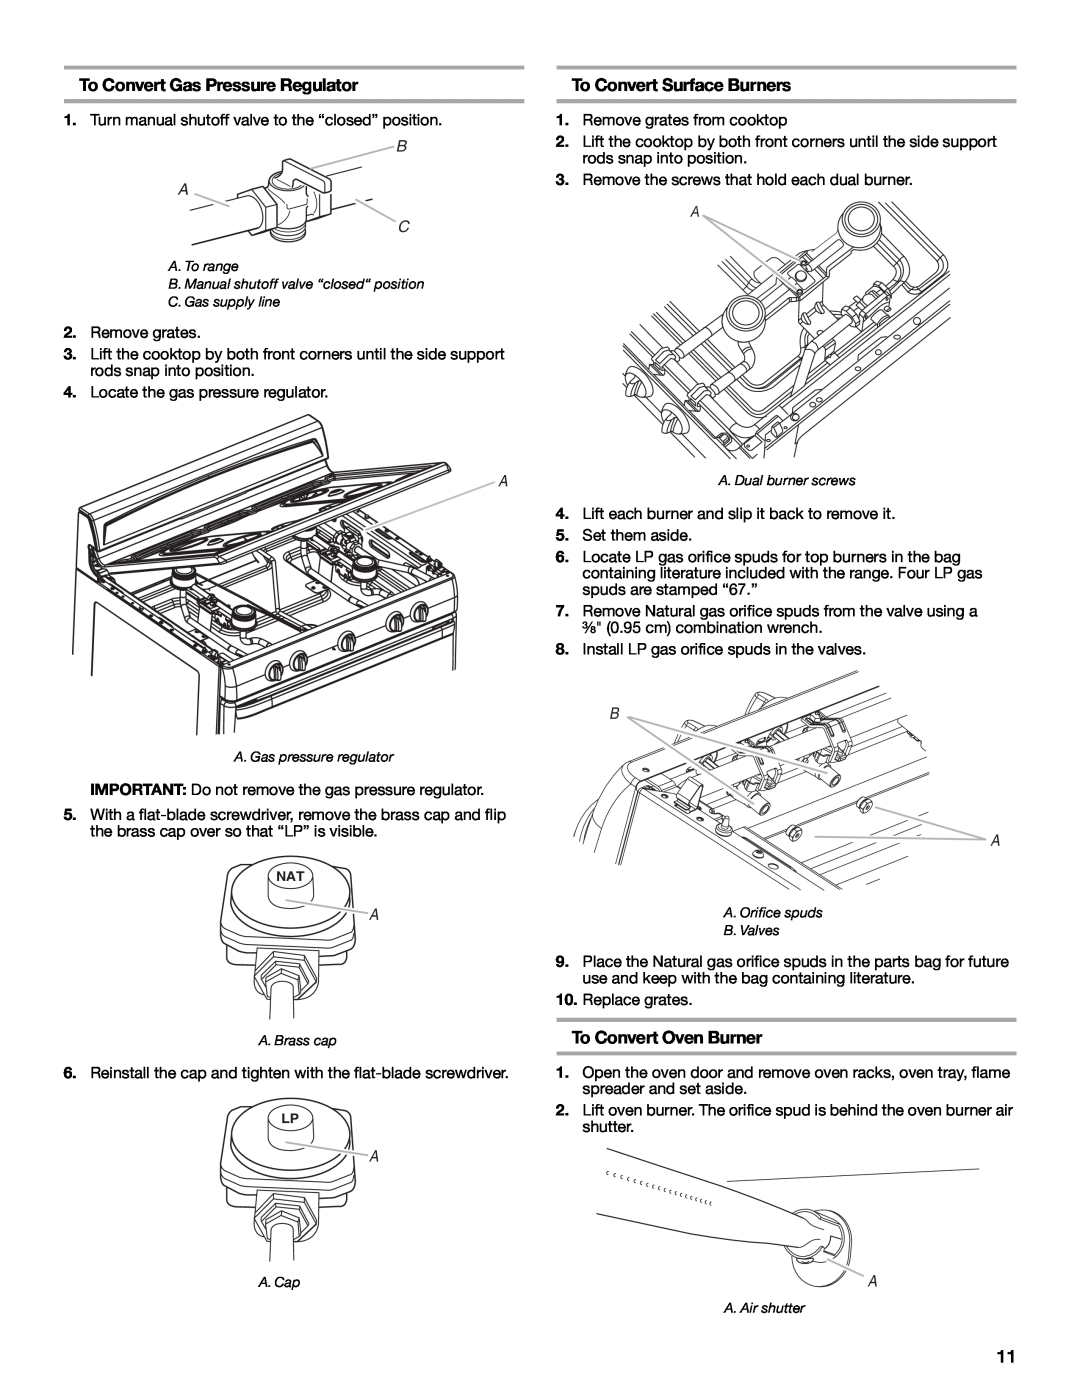 Estate W10121806C To Convert Gas Pressure Regulator, To Convert Surface Burners, To Convert Oven Burner, B A C 